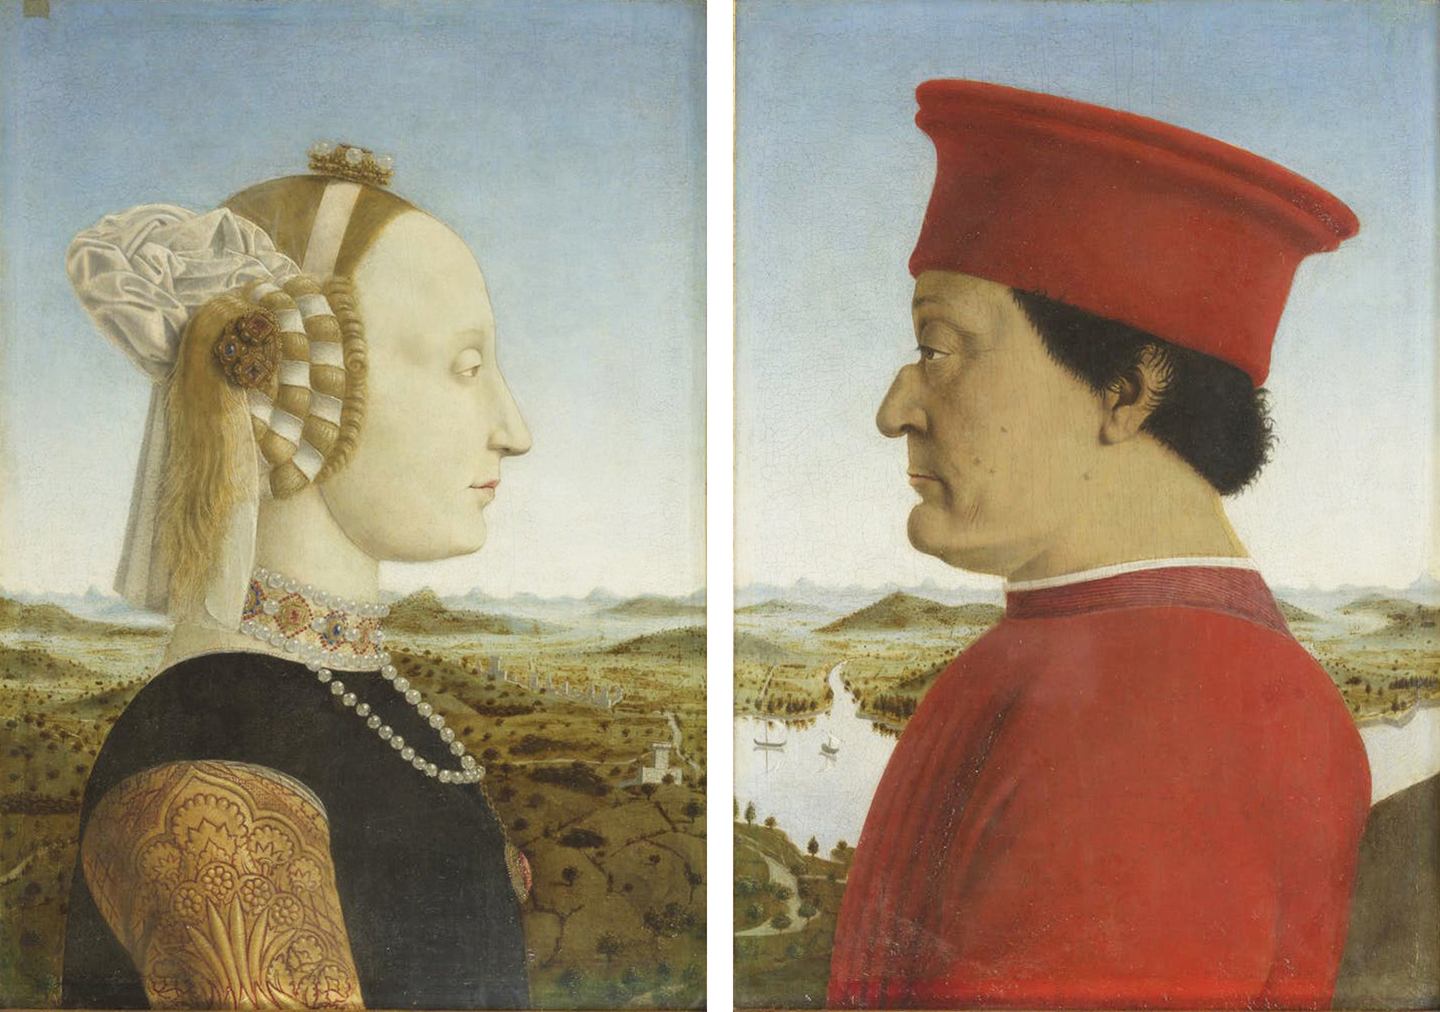 Chân dung của Công tước và Công nương xứ Urbino, ngài Federico da Montefeltro và phu nhân Battista Sforza, họa sỹ Piero della Francesca, vẽ từ khoảng năm 1473 đến 1475. Phòng trưng bày Uffizi, thành phố Florence. (Ảnh: Tư liệu công cộng)